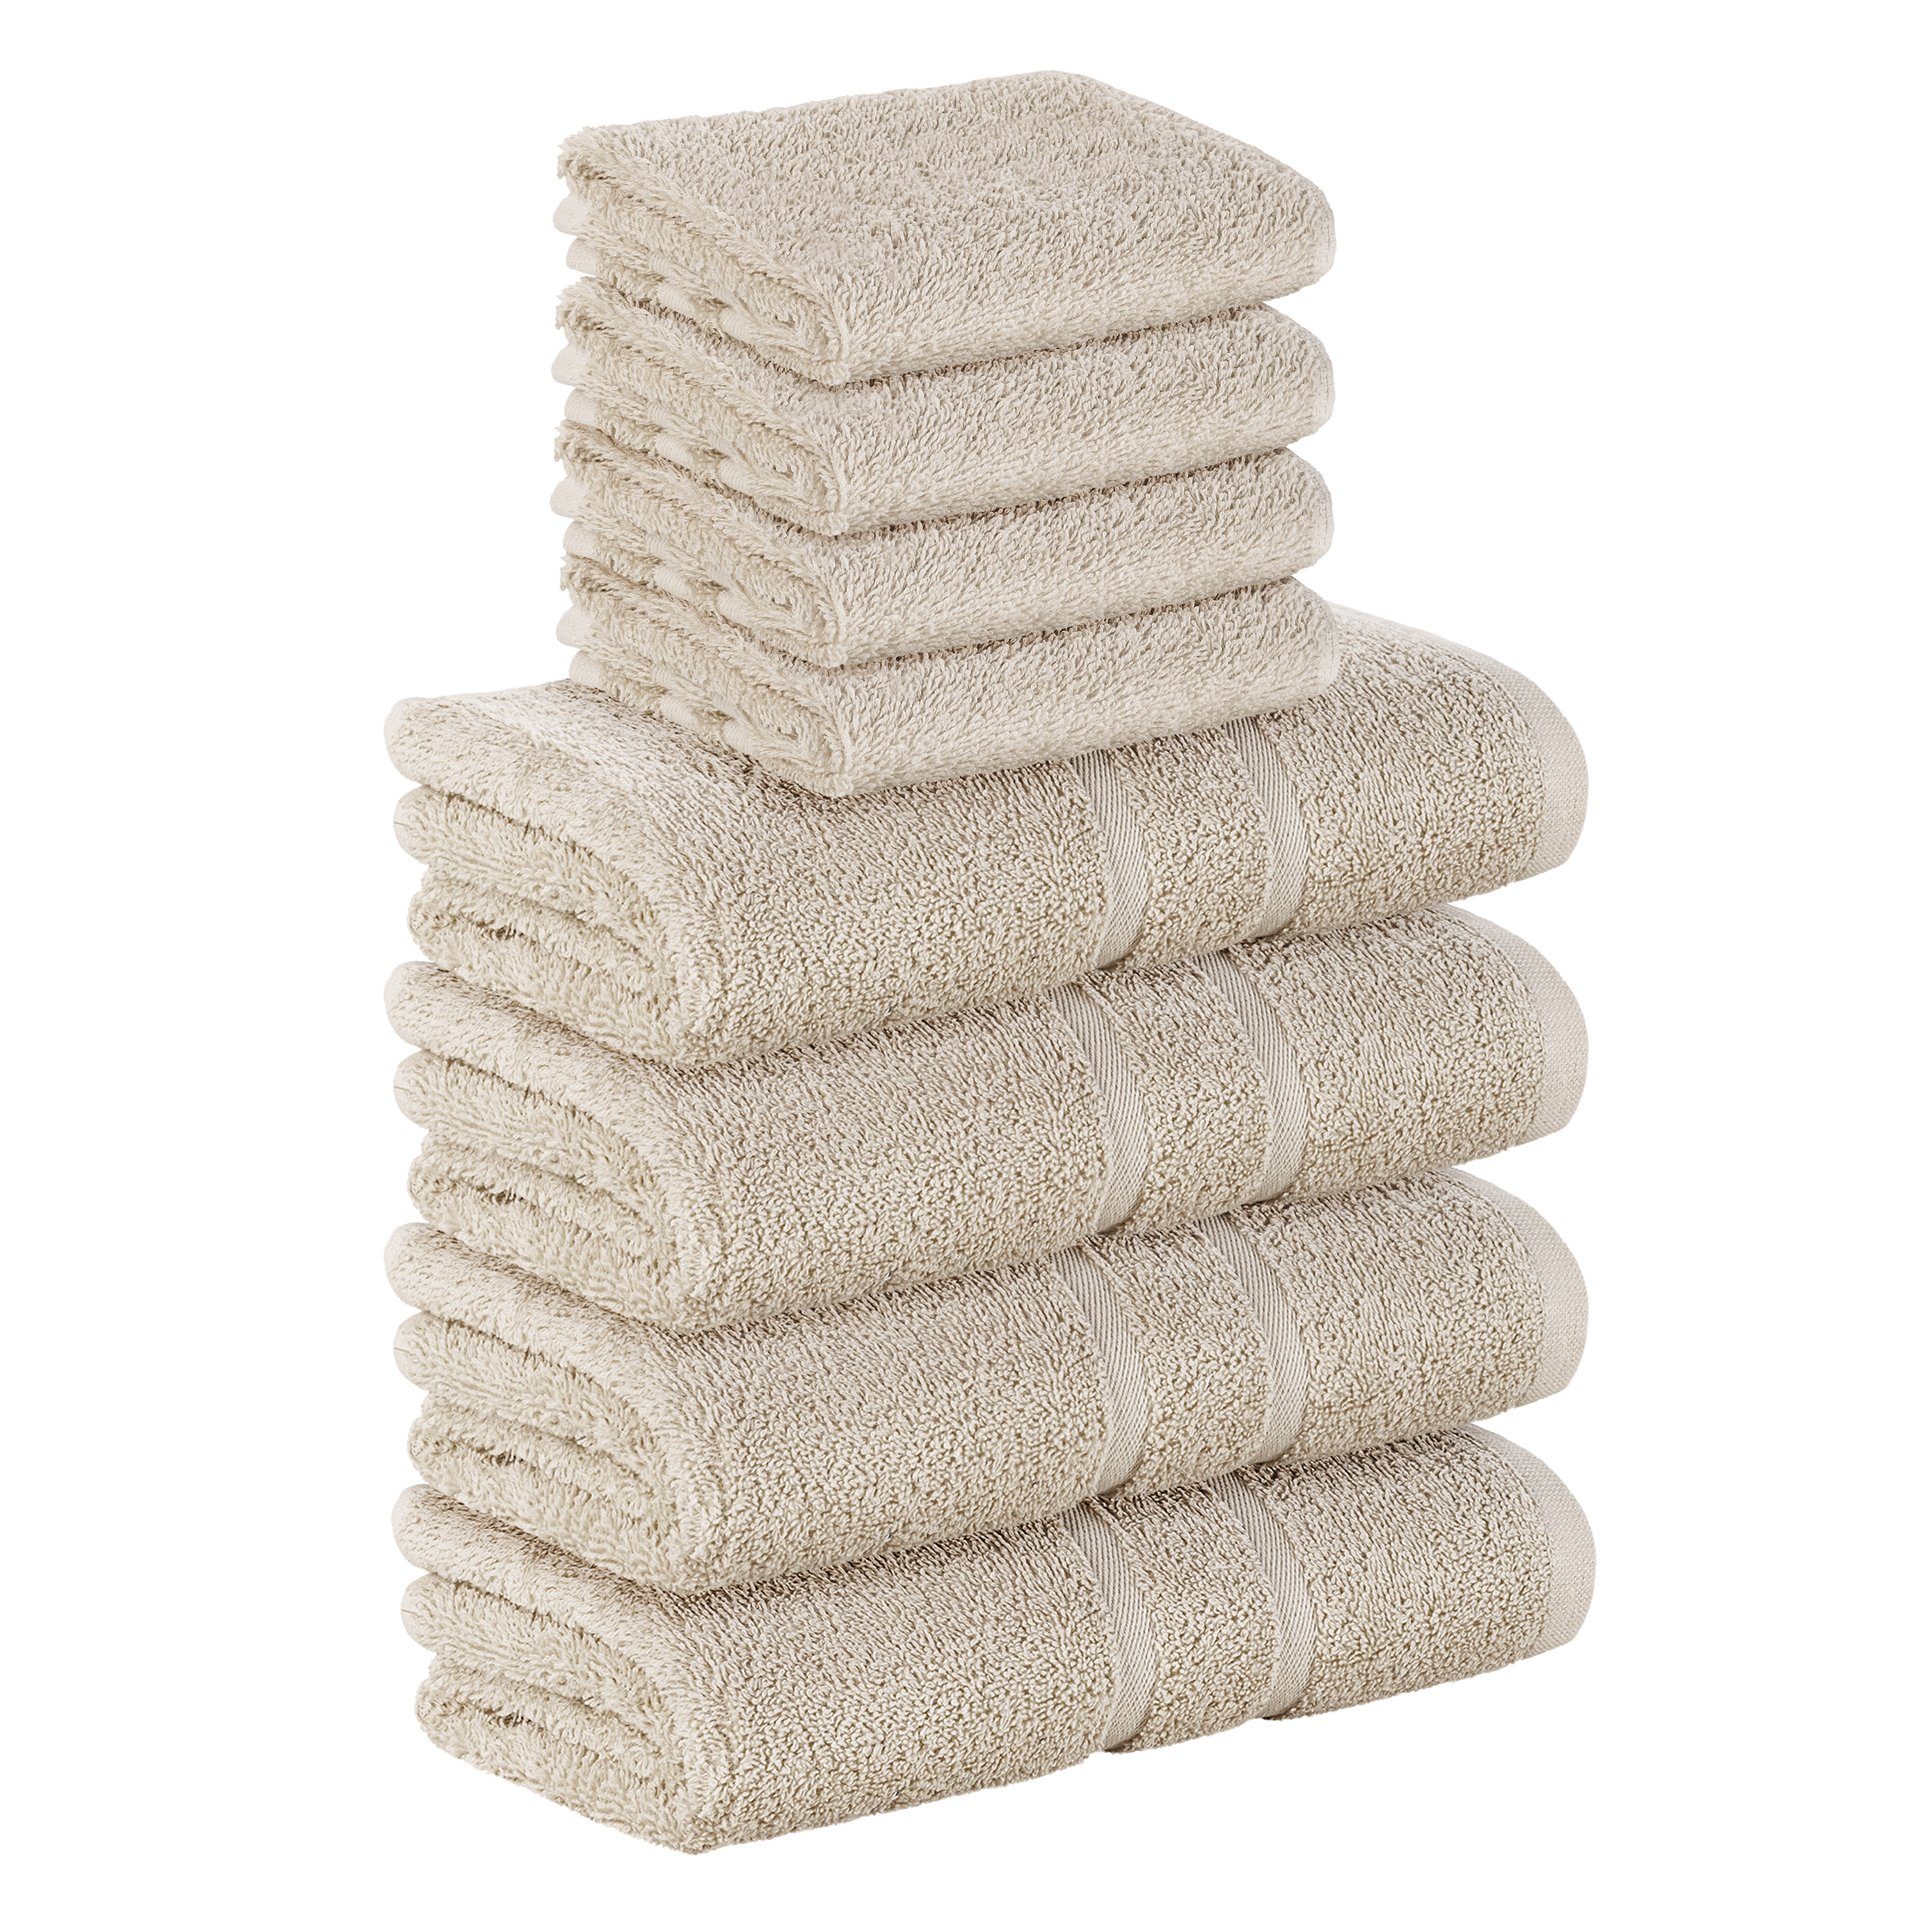 StickandShine Handtuch Set 4x Gästehandtuch 4x Handtücher als SET in verschiedenen Farben (8 Teilig) 100% Baumwolle 500 GSM Frottee 8er Handtuch Pack, 100% Baumwolle 500 GSM Sand